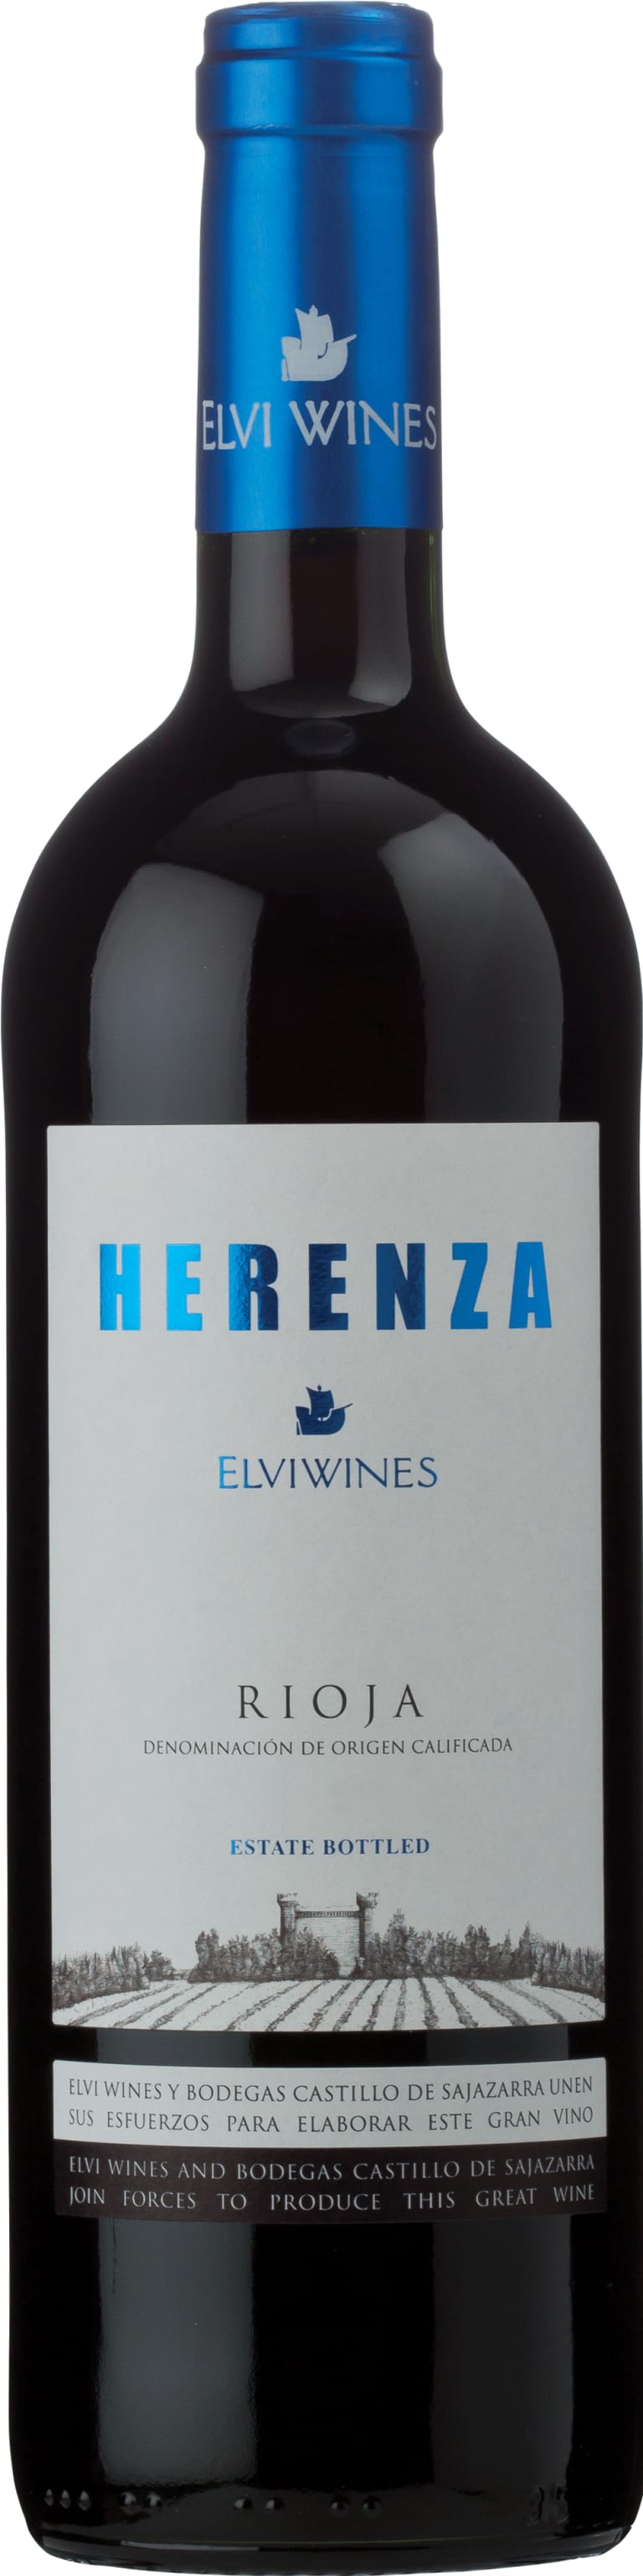 Elvi Wines Rioja Herenza 2017